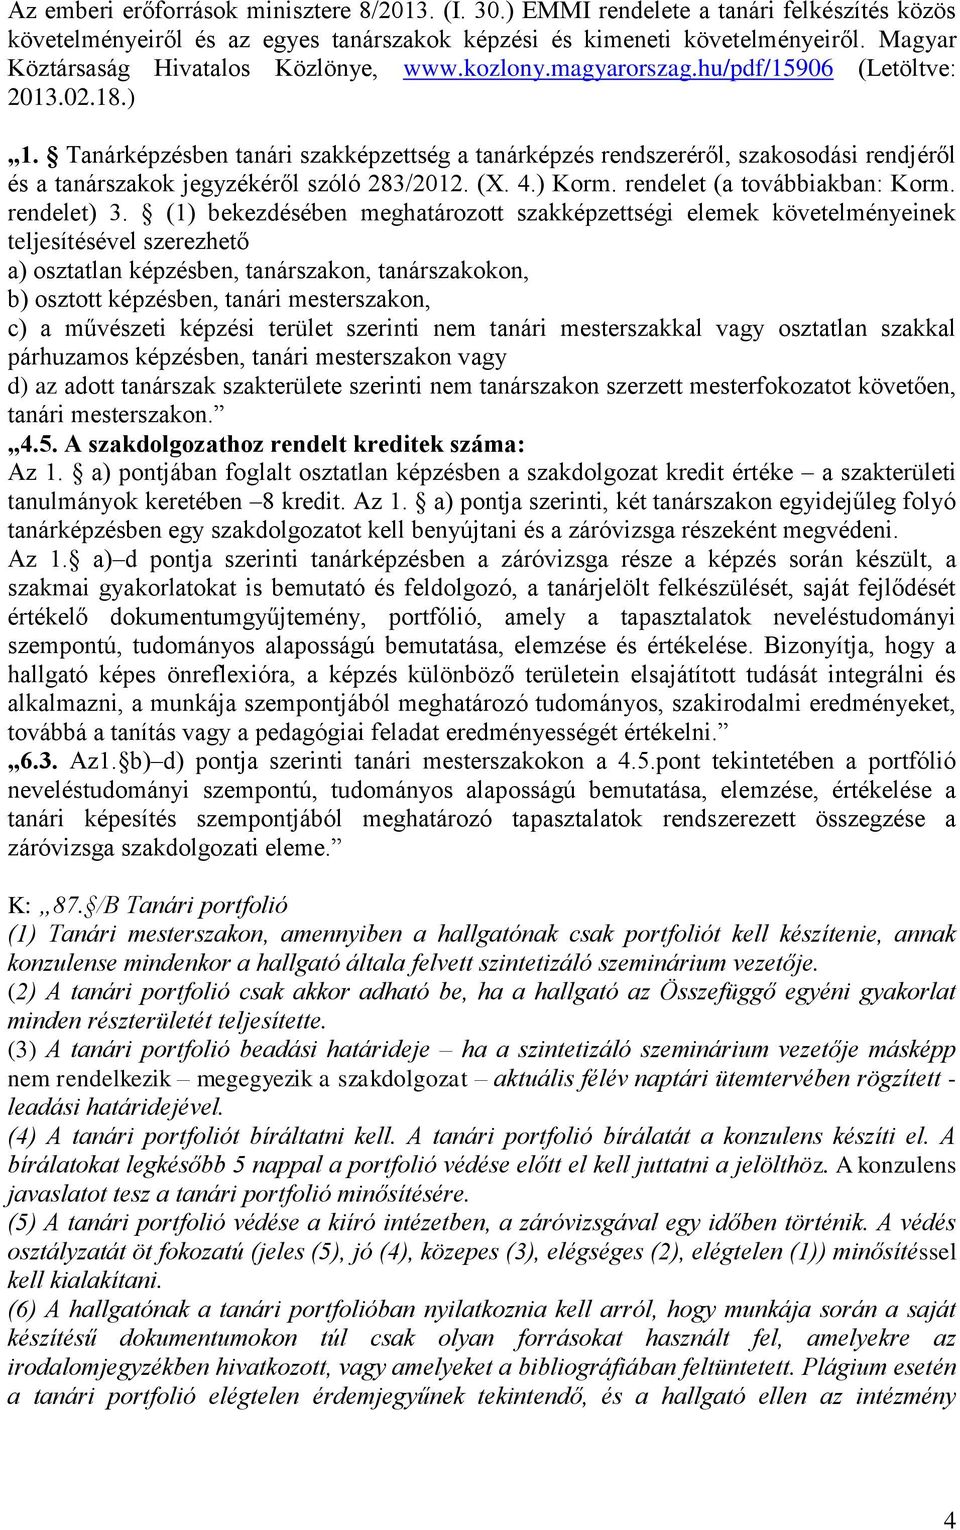 Tanárképzésben tanári szakképzettség a tanárképzés rendszeréről, szakosodási rendjéről és a tanárszakok jegyzékéről szóló 283/2012. (X. 4.) Korm. rendelet (a továbbiakban: Korm. rendelet) 3.